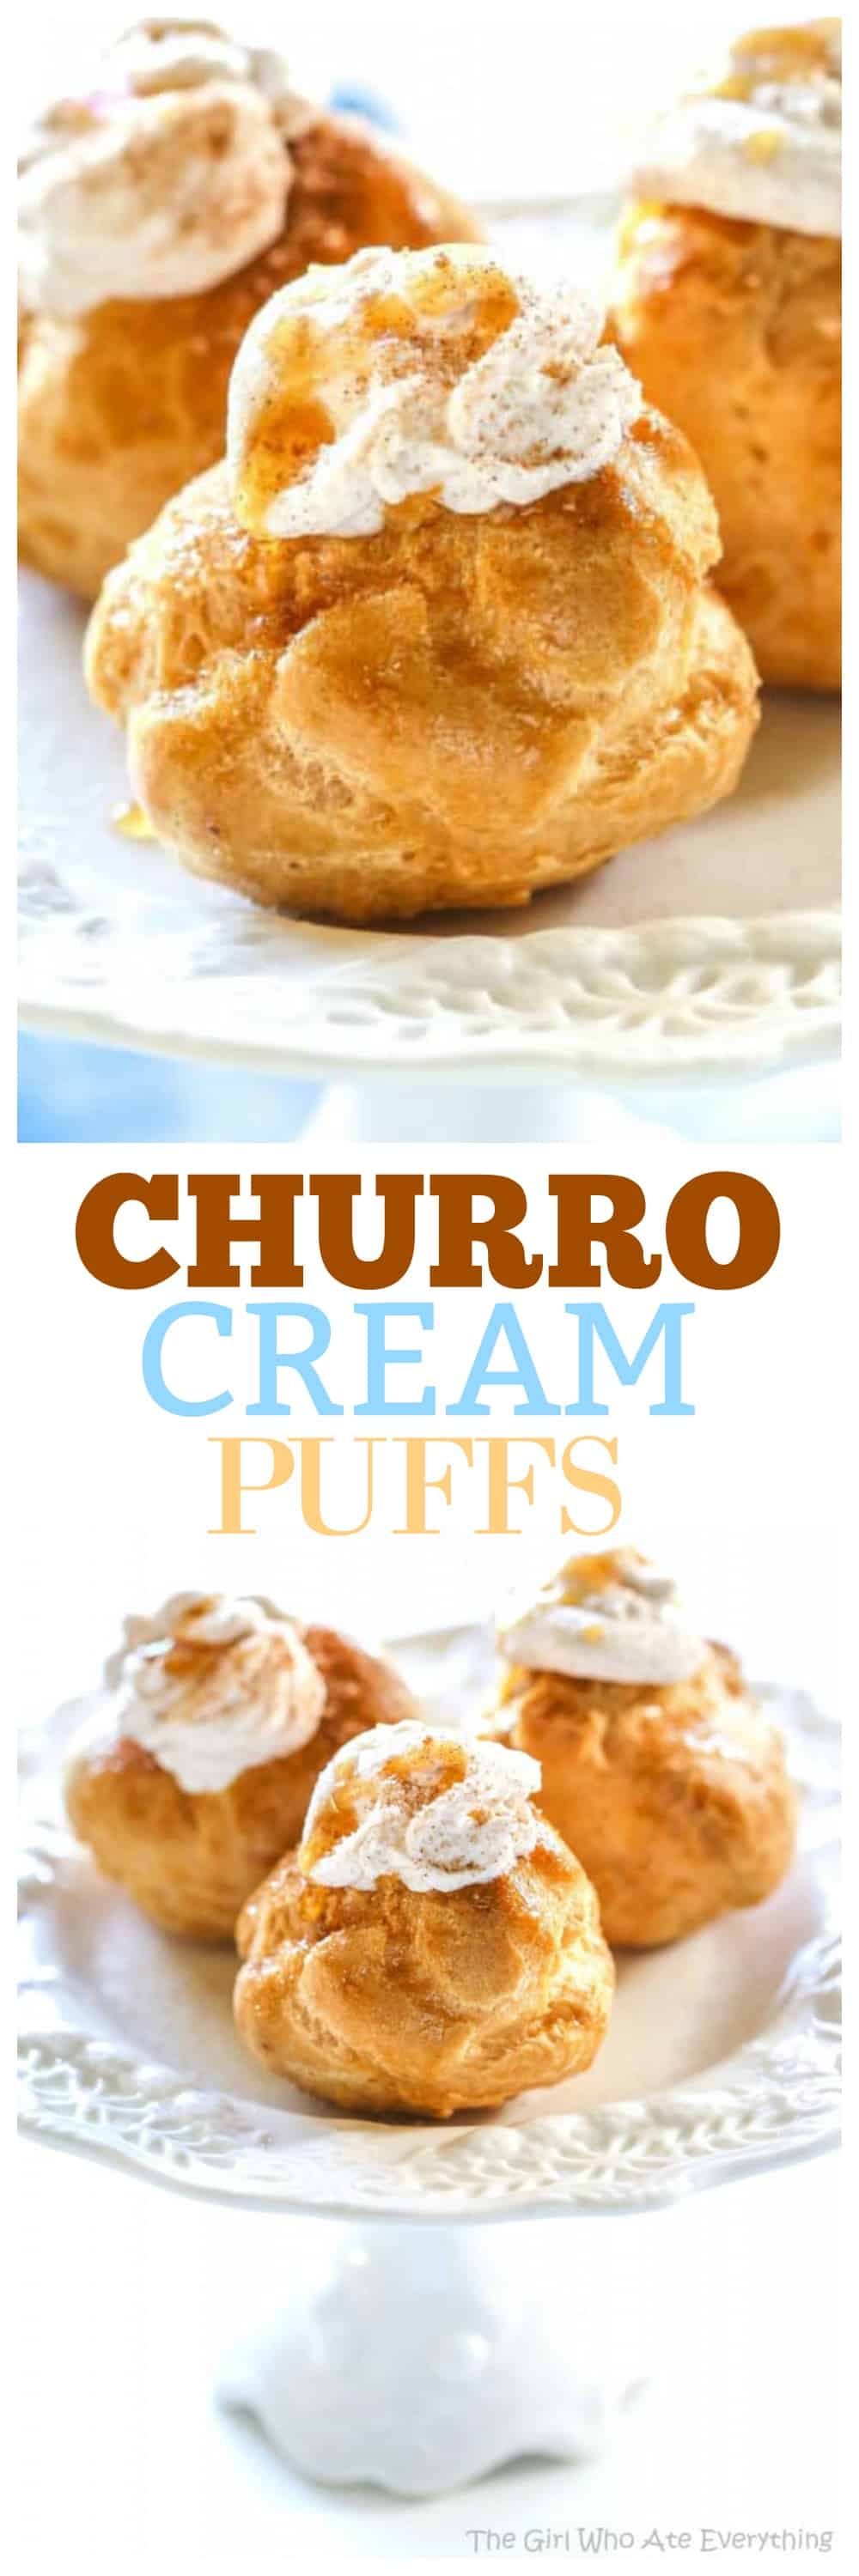 Churro Cream Puffs on a plate